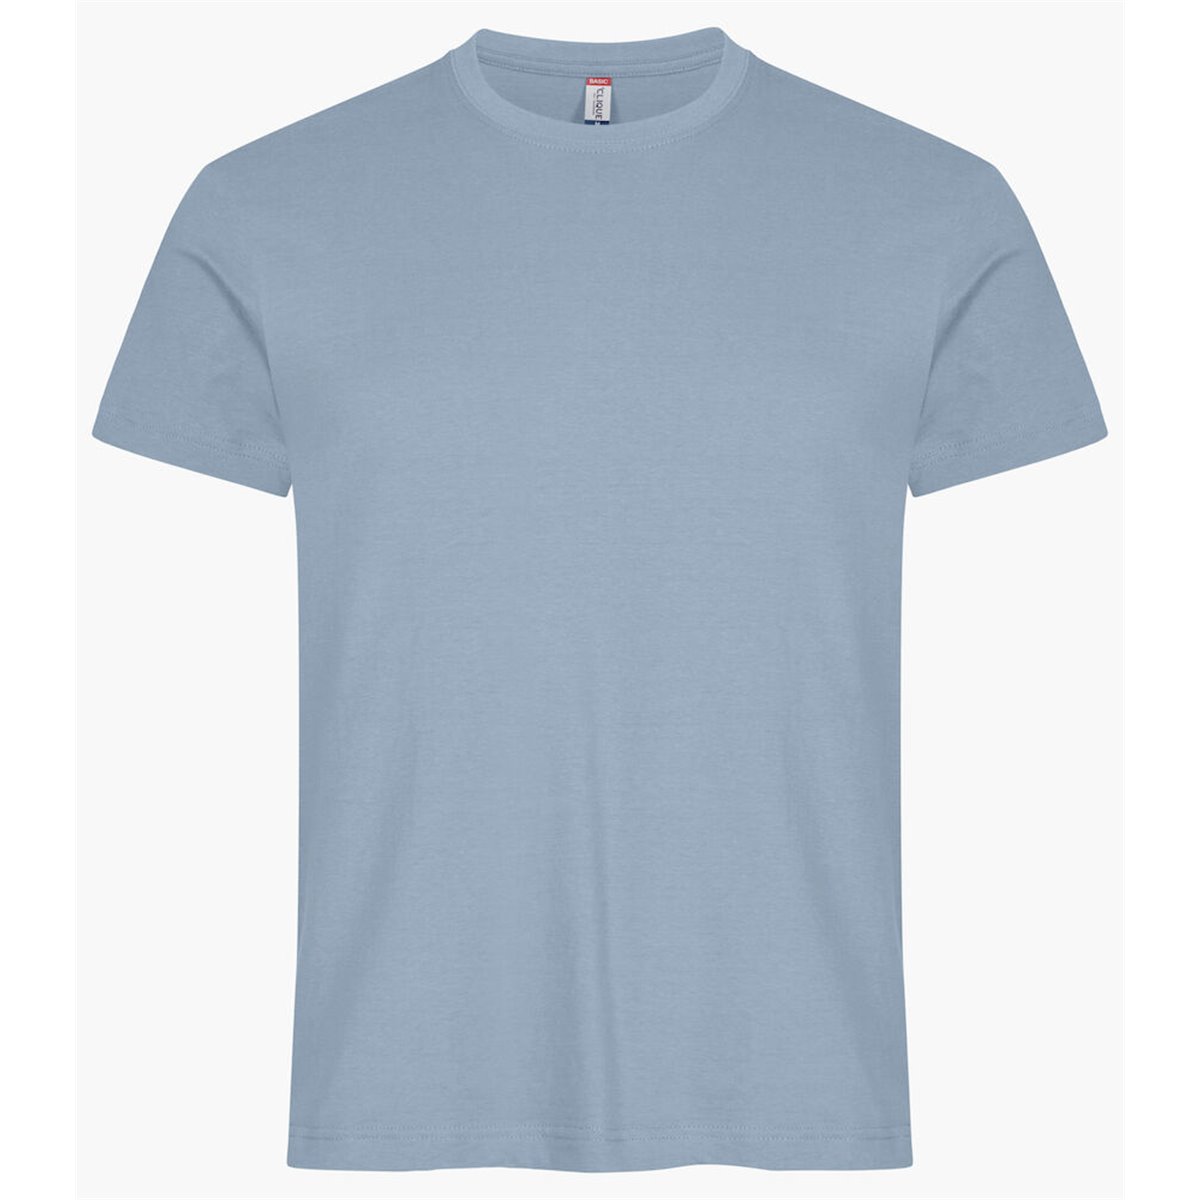 T-shirt Basic-T BIANCO T pour homme